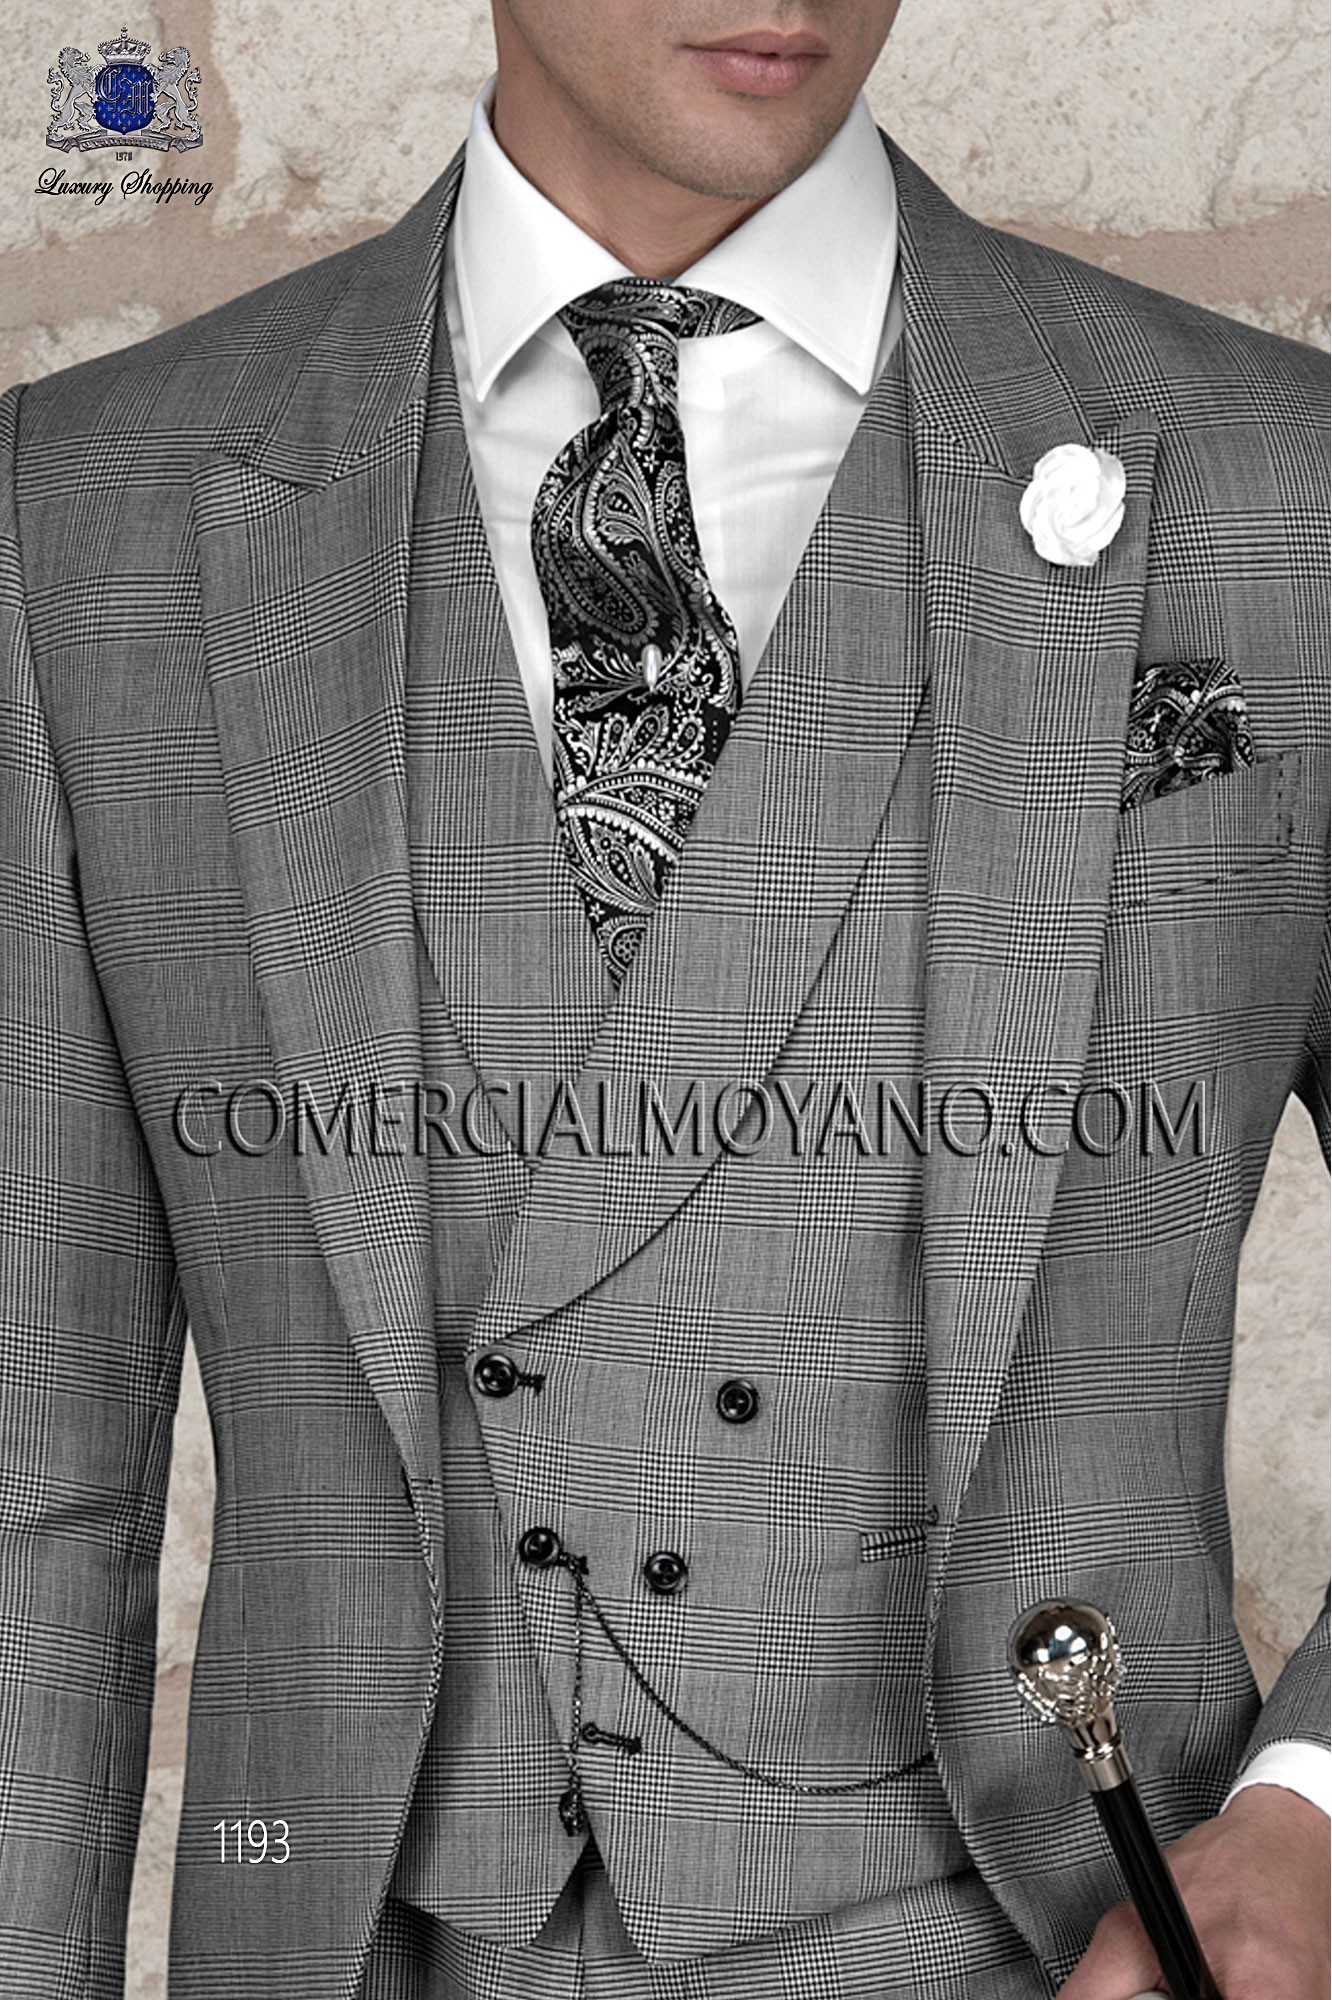 Traje Gentleman de novio príncipe de gales modelo: 1193 Mario Moyano colección Gentleman